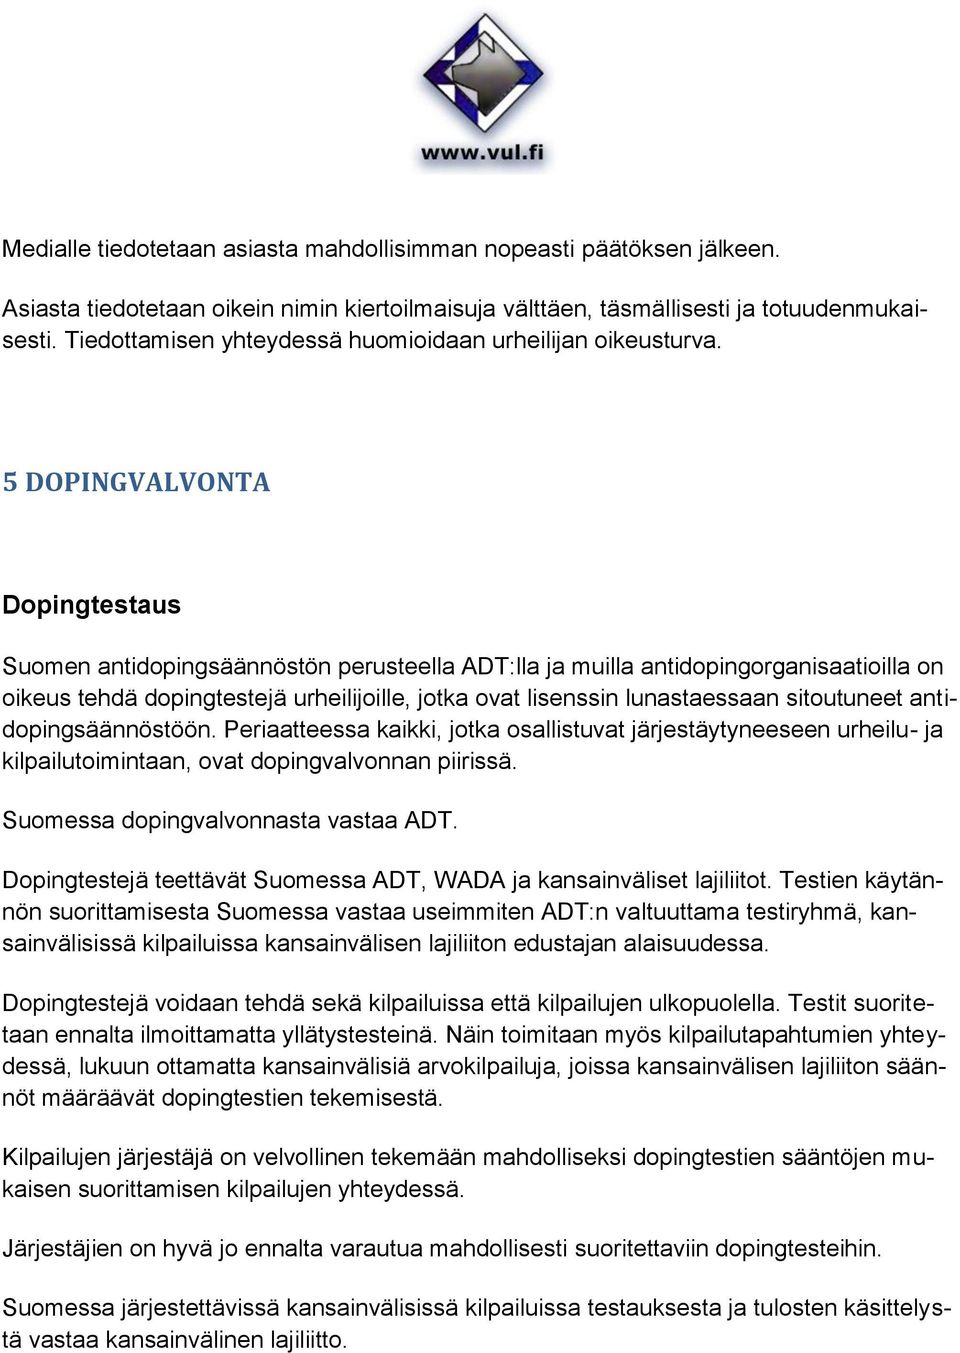 5 DOPINGVALVONTA Dopingtestaus Suomen antidopingsäännöstön perusteella ADT:lla ja muilla antidopingorganisaatioilla on oikeus tehdä dopingtestejä urheilijoille, jotka ovat lisenssin lunastaessaan